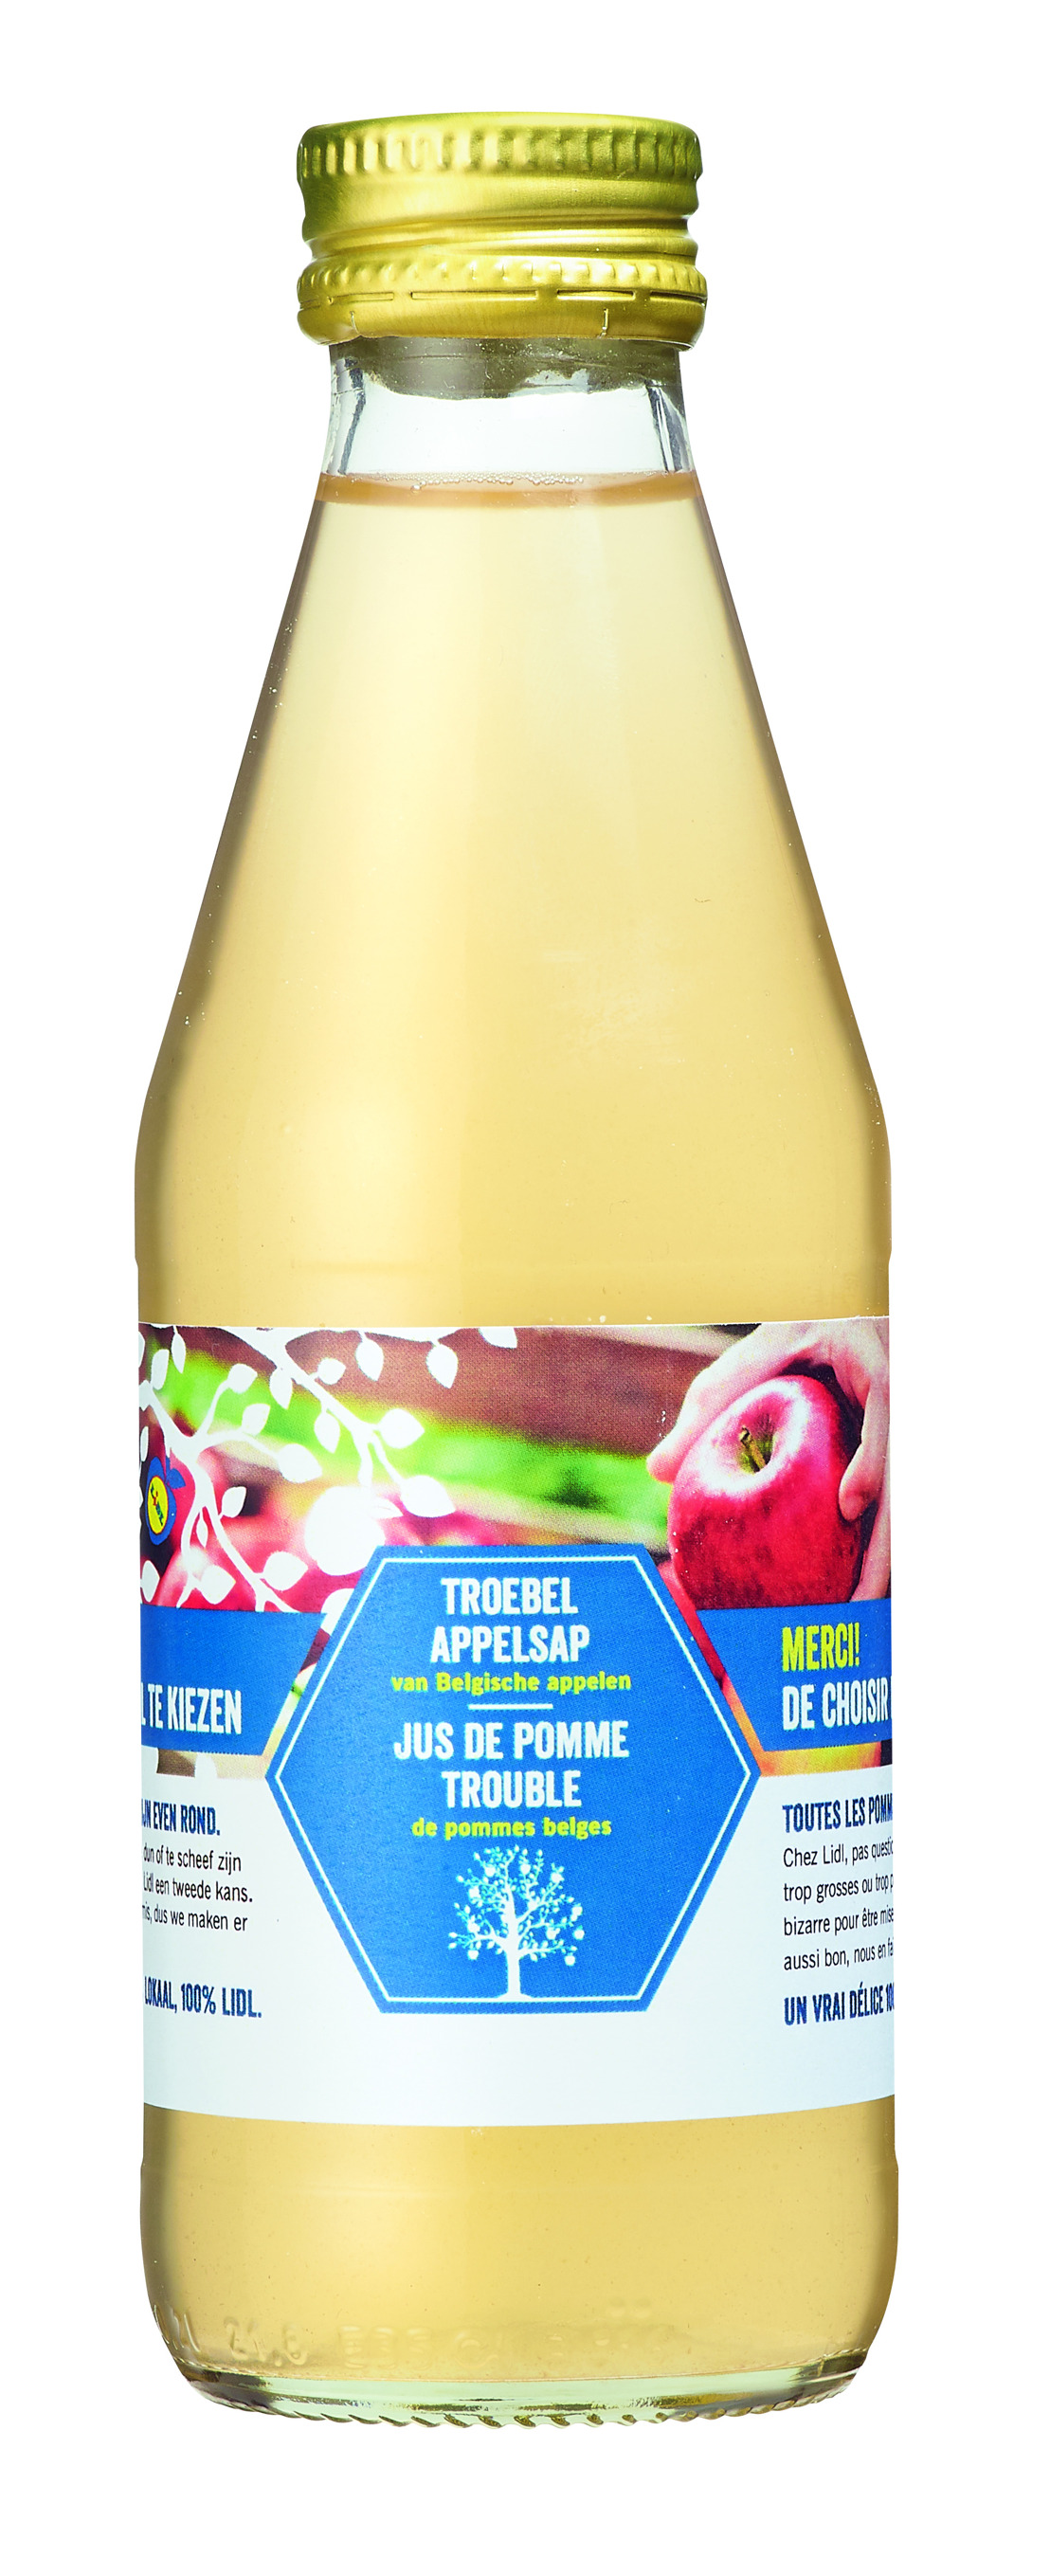 À l’occasion du « Weekend du client », Lidl offrira à chaque client un jus de pomme en bouteille 100% belge et fabriqué à partir de pommes « moches ».